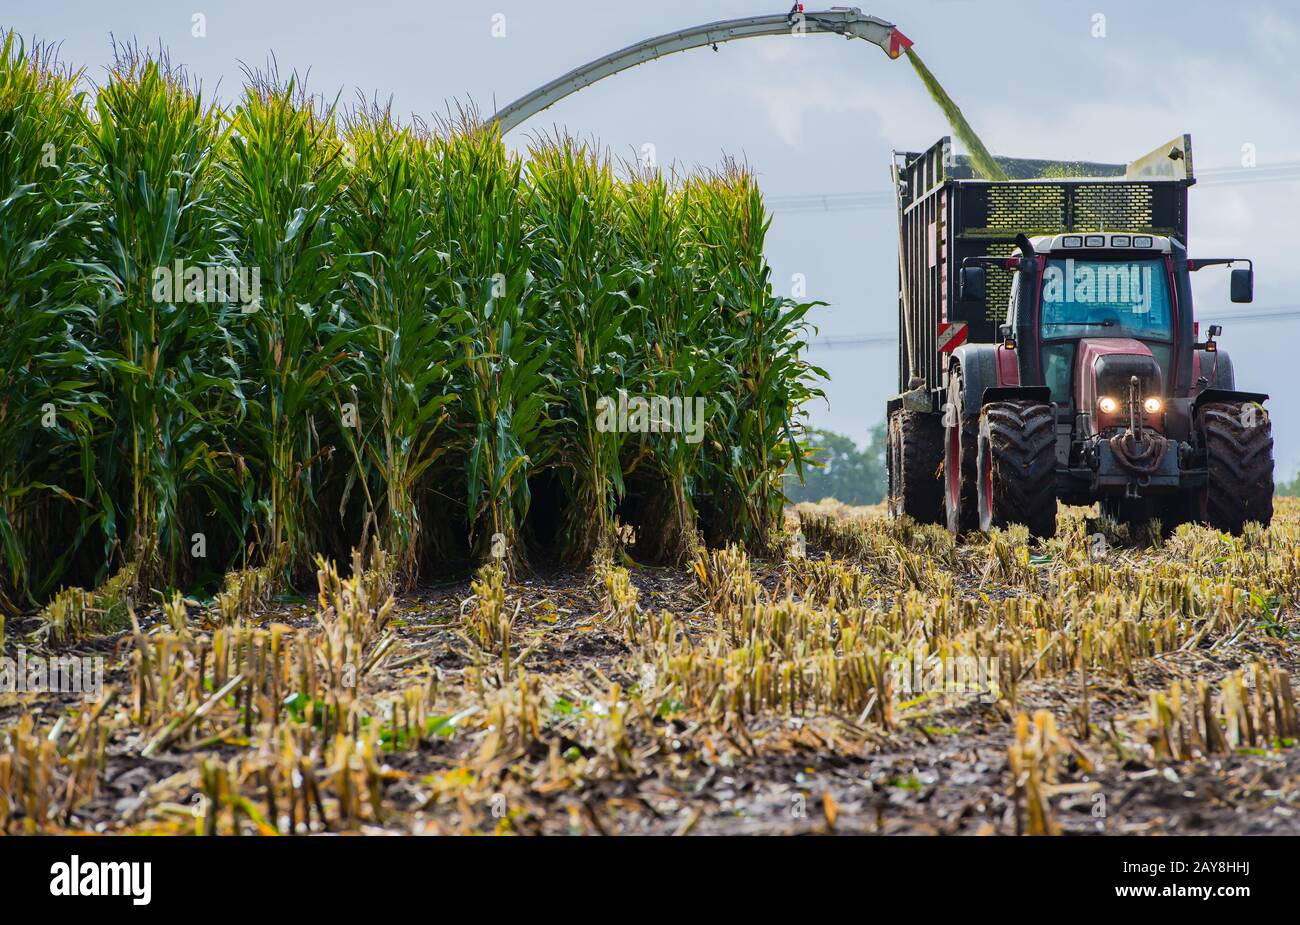 Récolte du maïs, ensileuse de maïs en action, camion de récolte avec tracteur Banque D'Images